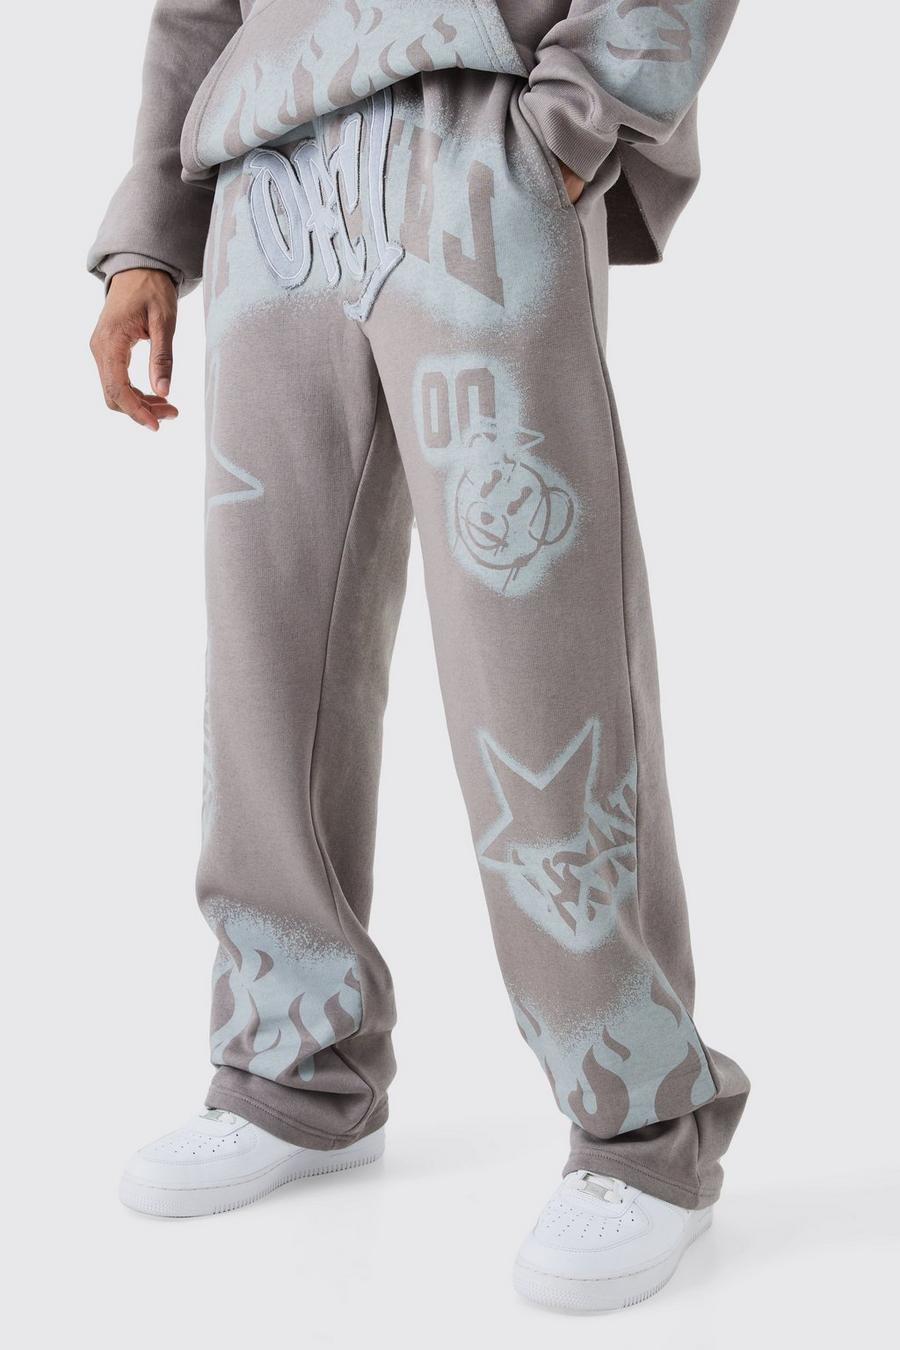 Pantaloni tuta Tall rilassati con applique stile Graffiti, Mid grey